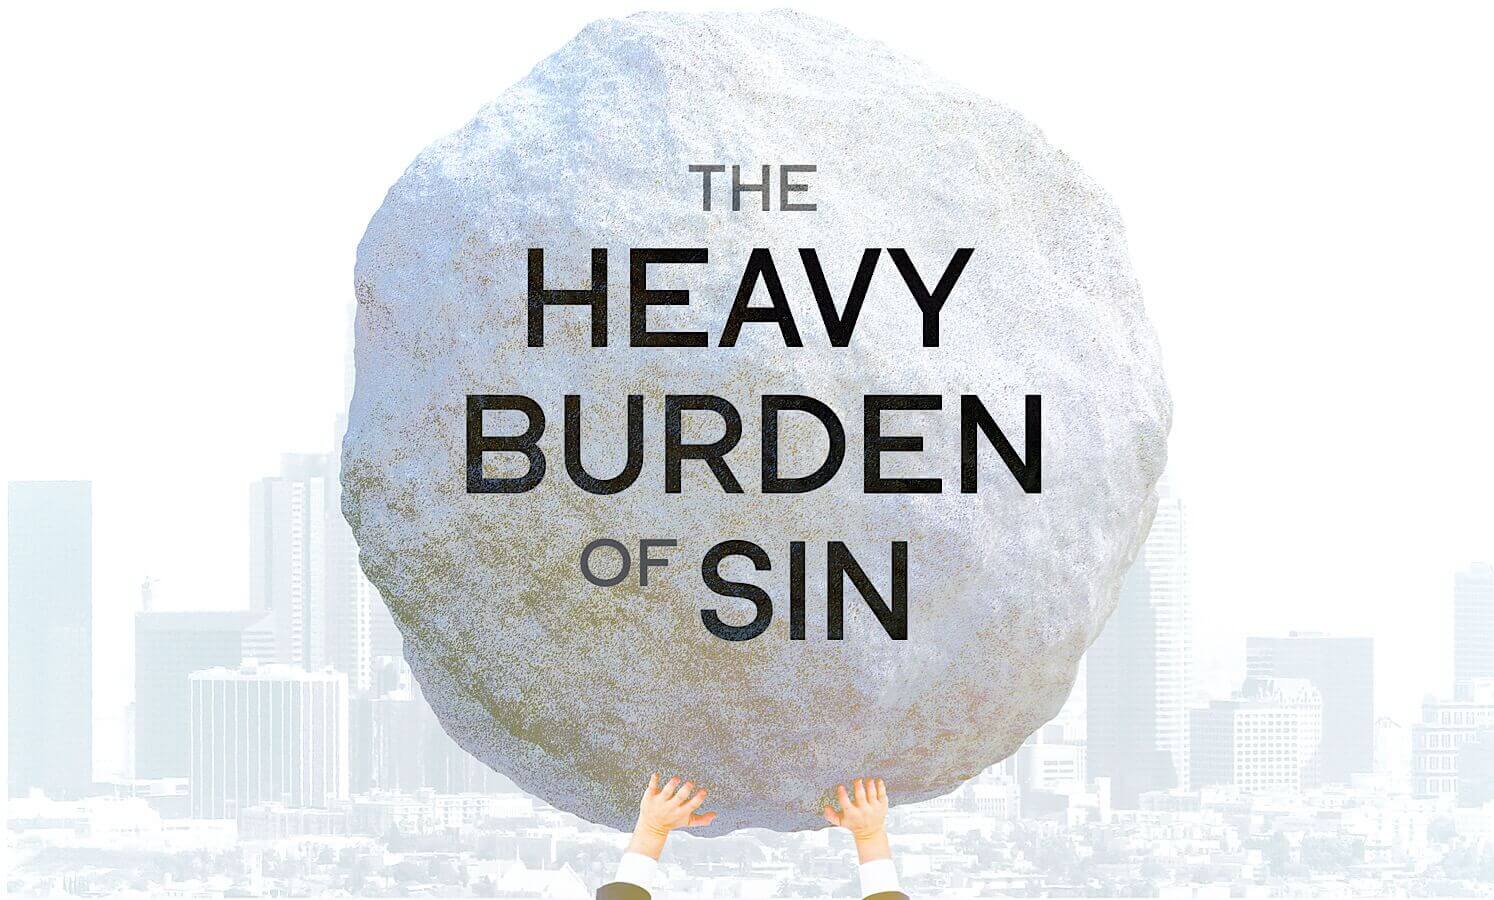 Burden of sin